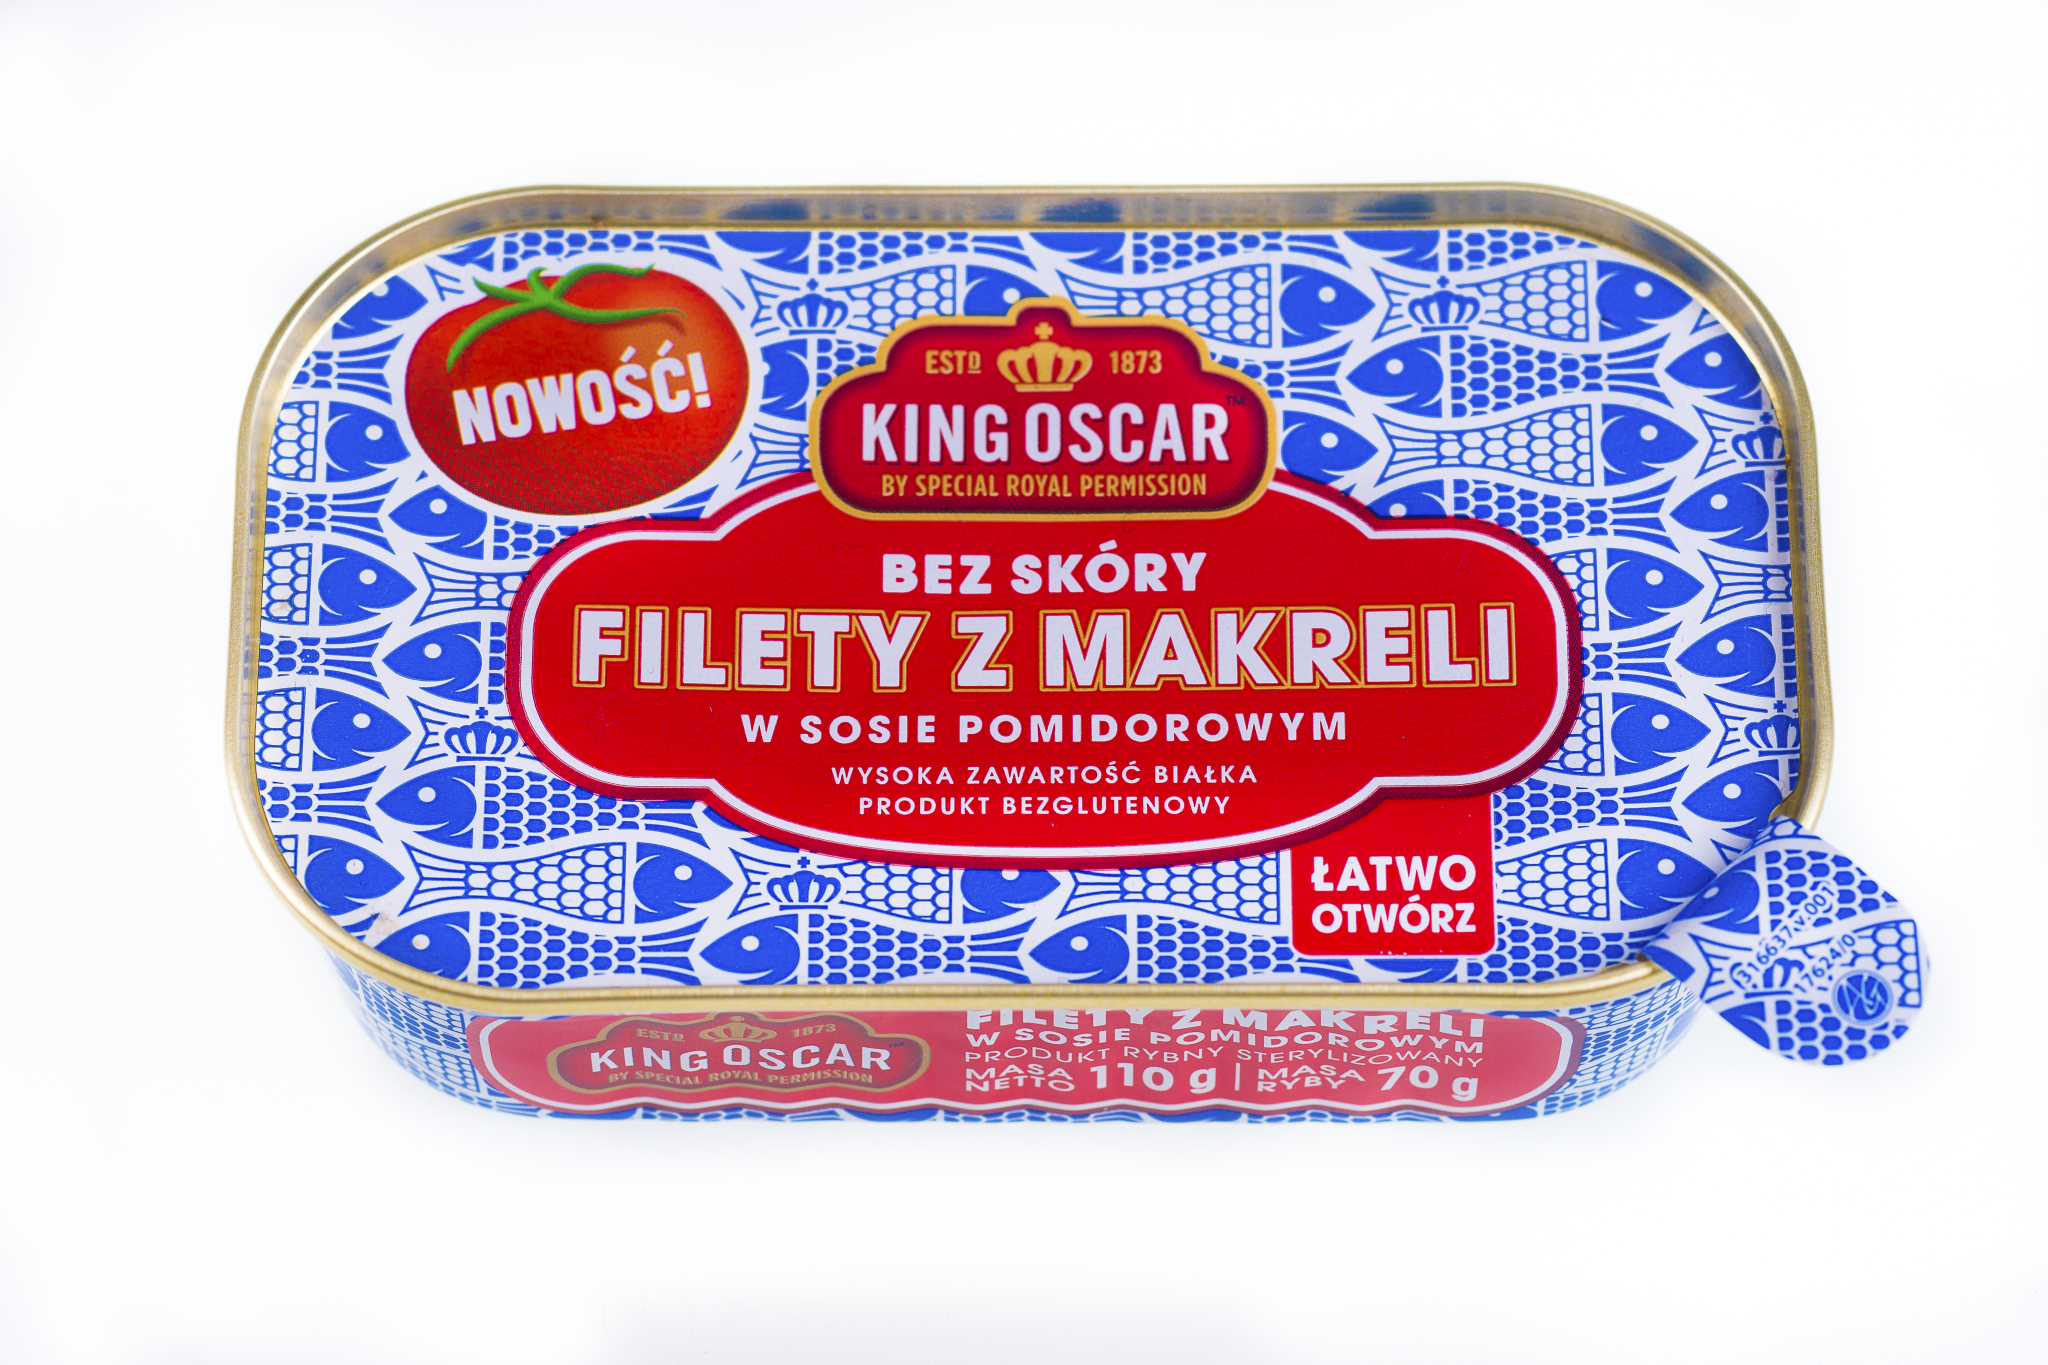 Nowy standard w konserwach makrelowych King Oscar